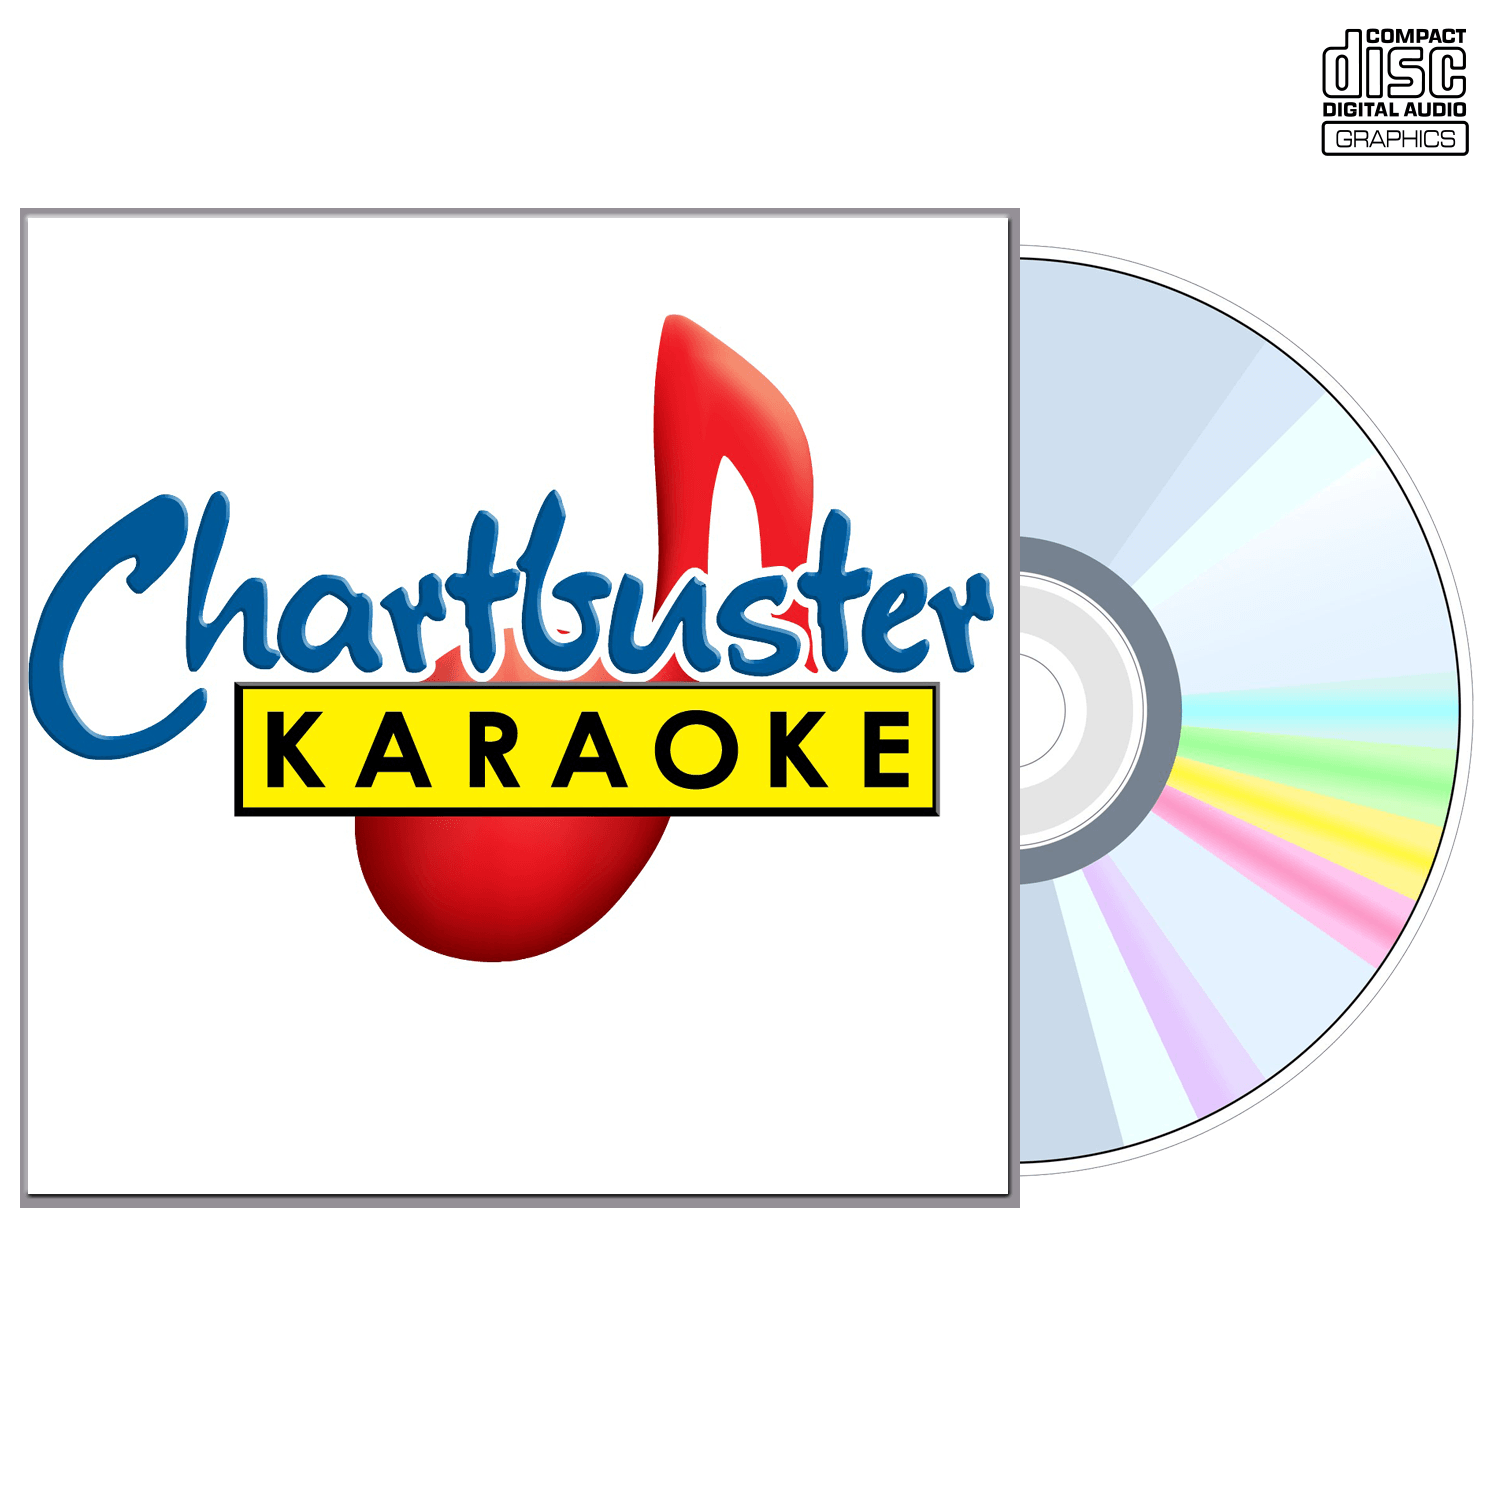 Harry Connick Jr - CD+G - Chartbuster Karaoke - Karaoke Home Entertainment